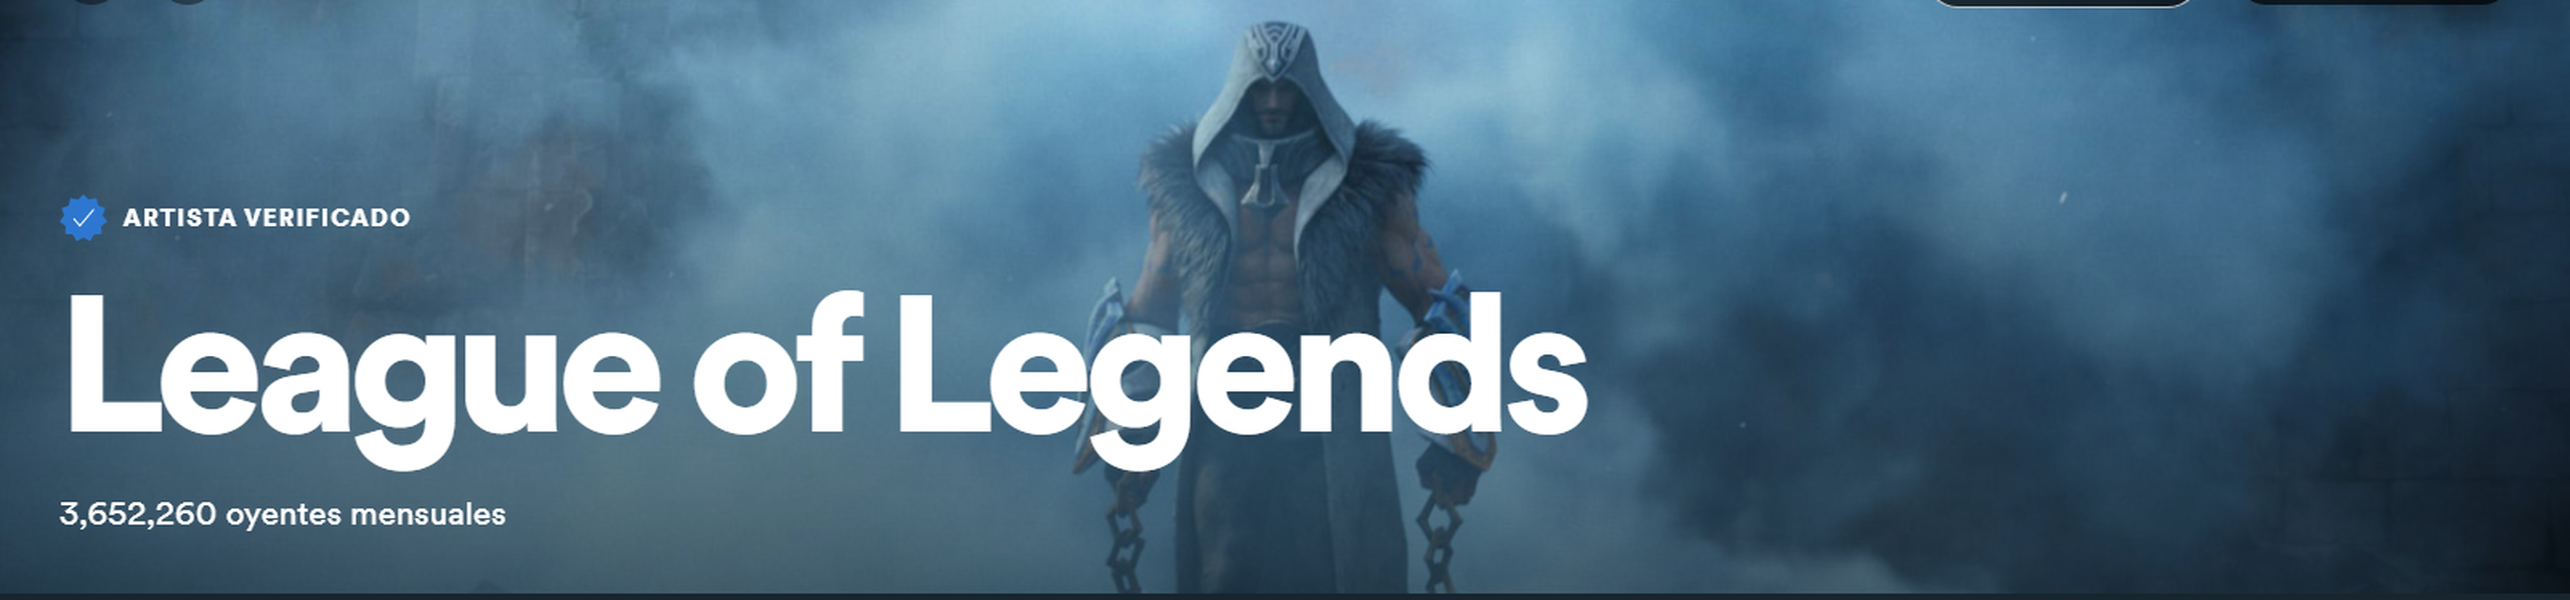 League of Legends en Spotify